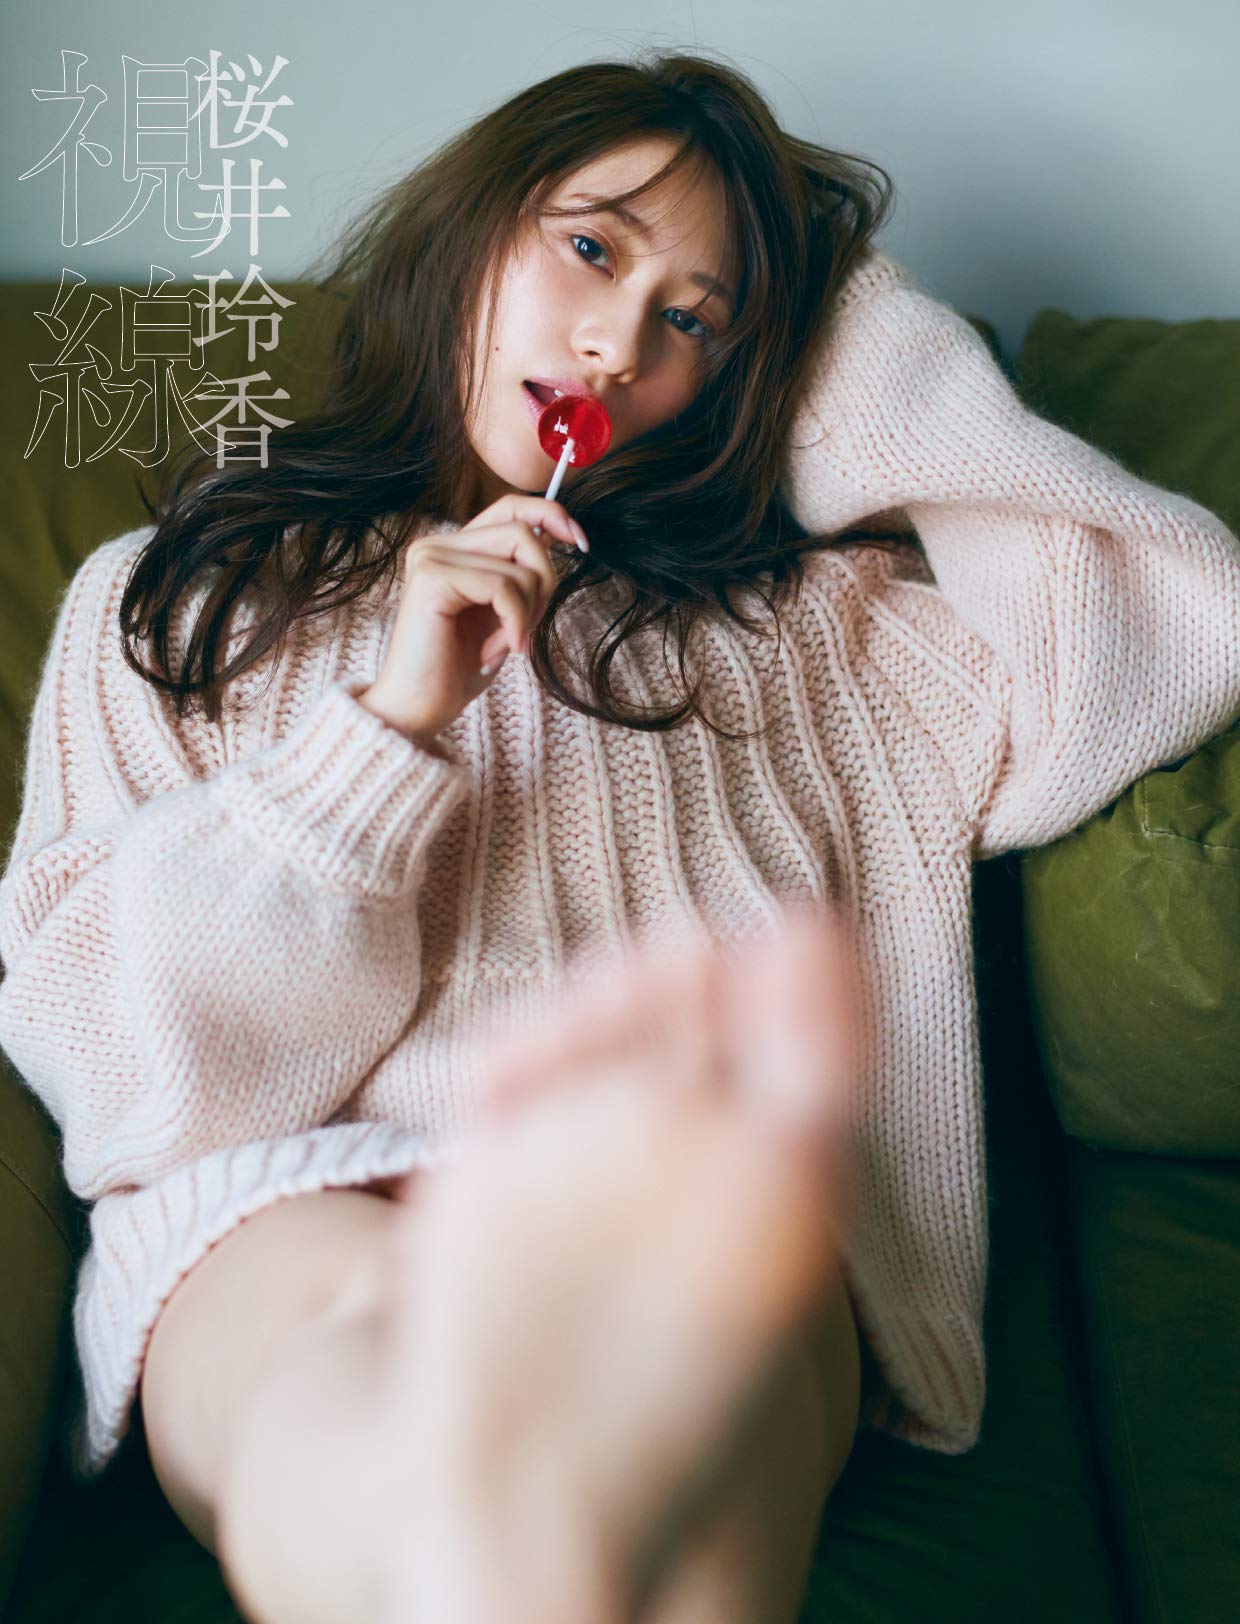 Reika Sakurai Photo Book "shisen" / Nogizaka46